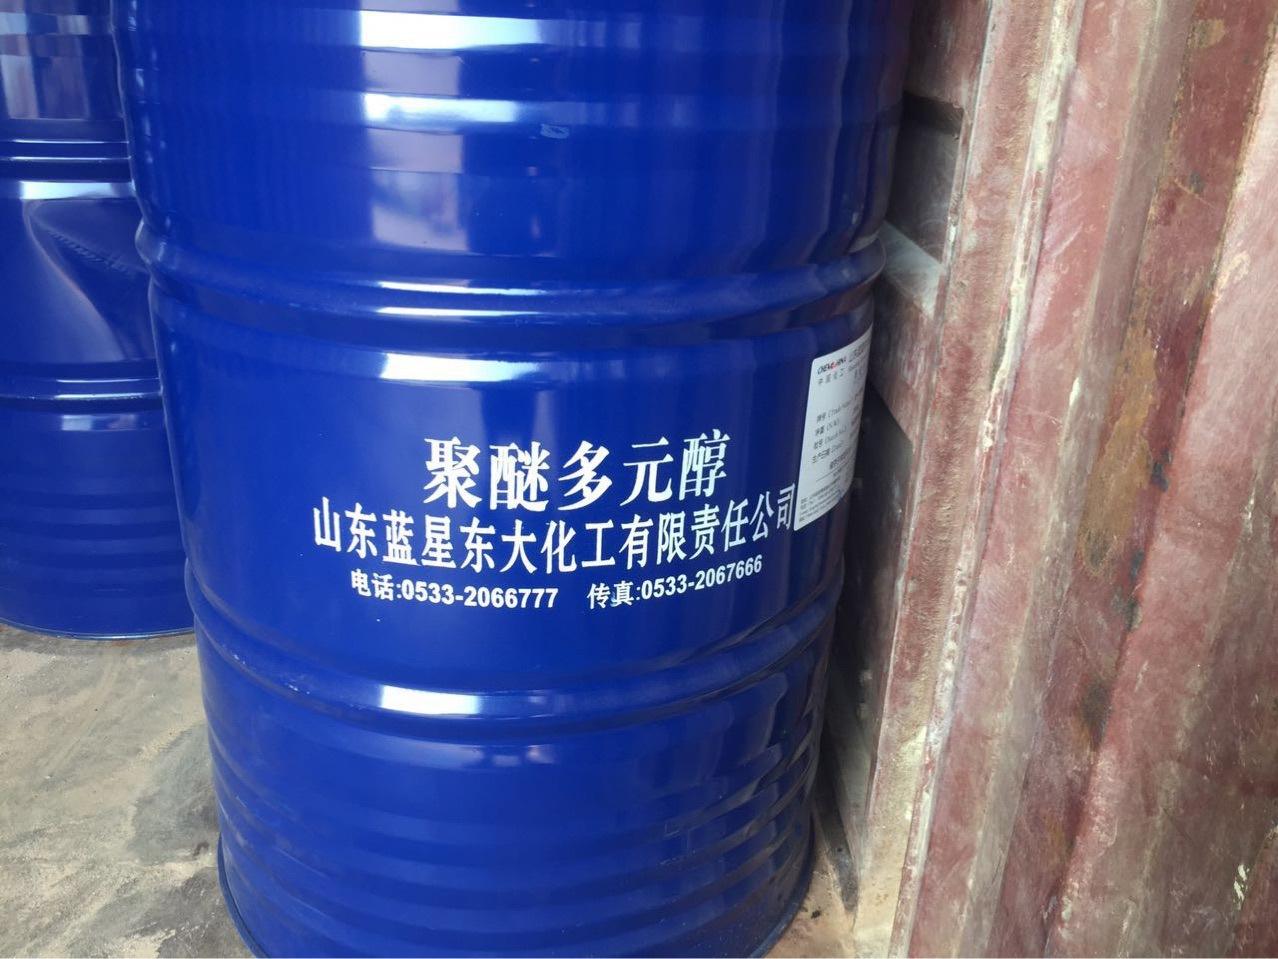 宁波回收丁苯橡胶大量上门收购不限地区